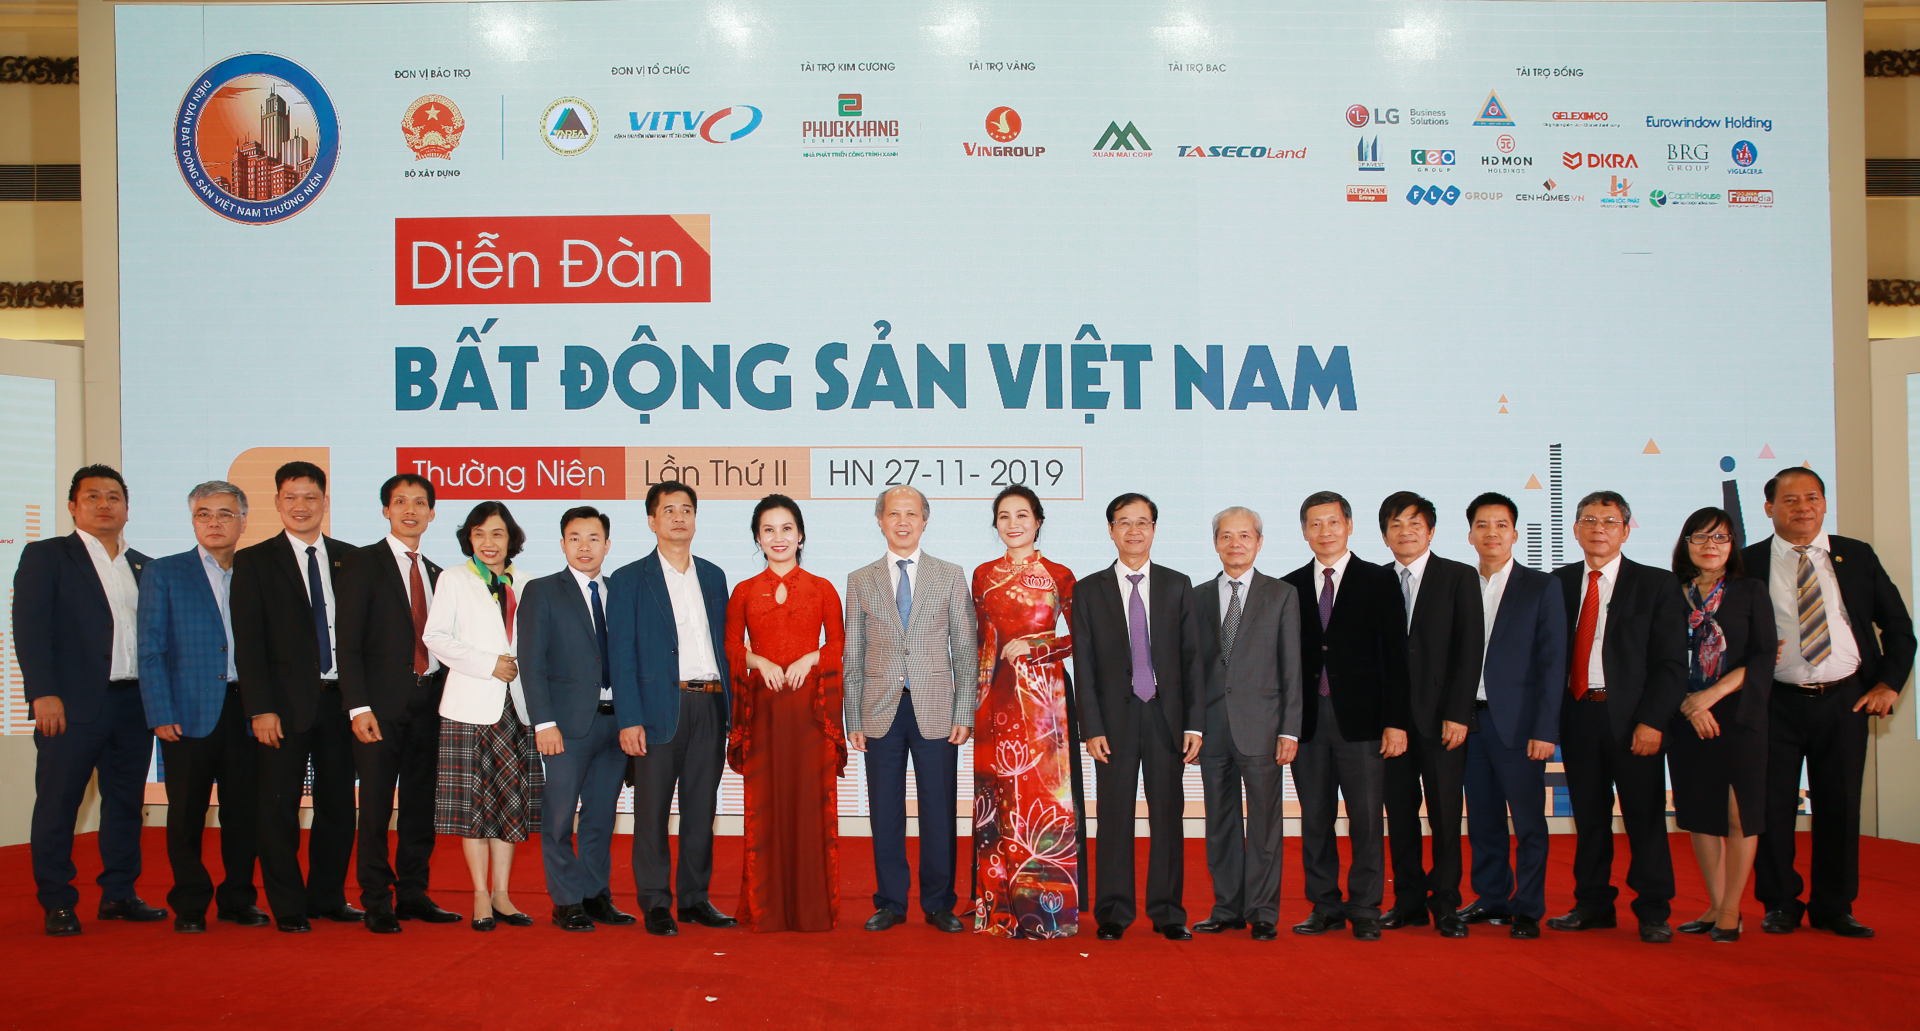 Phuc Khang Corp chia sẻ về ba xu thế bất động sản nổi bật tại Diễn đàn BĐS Việt Nam 2019